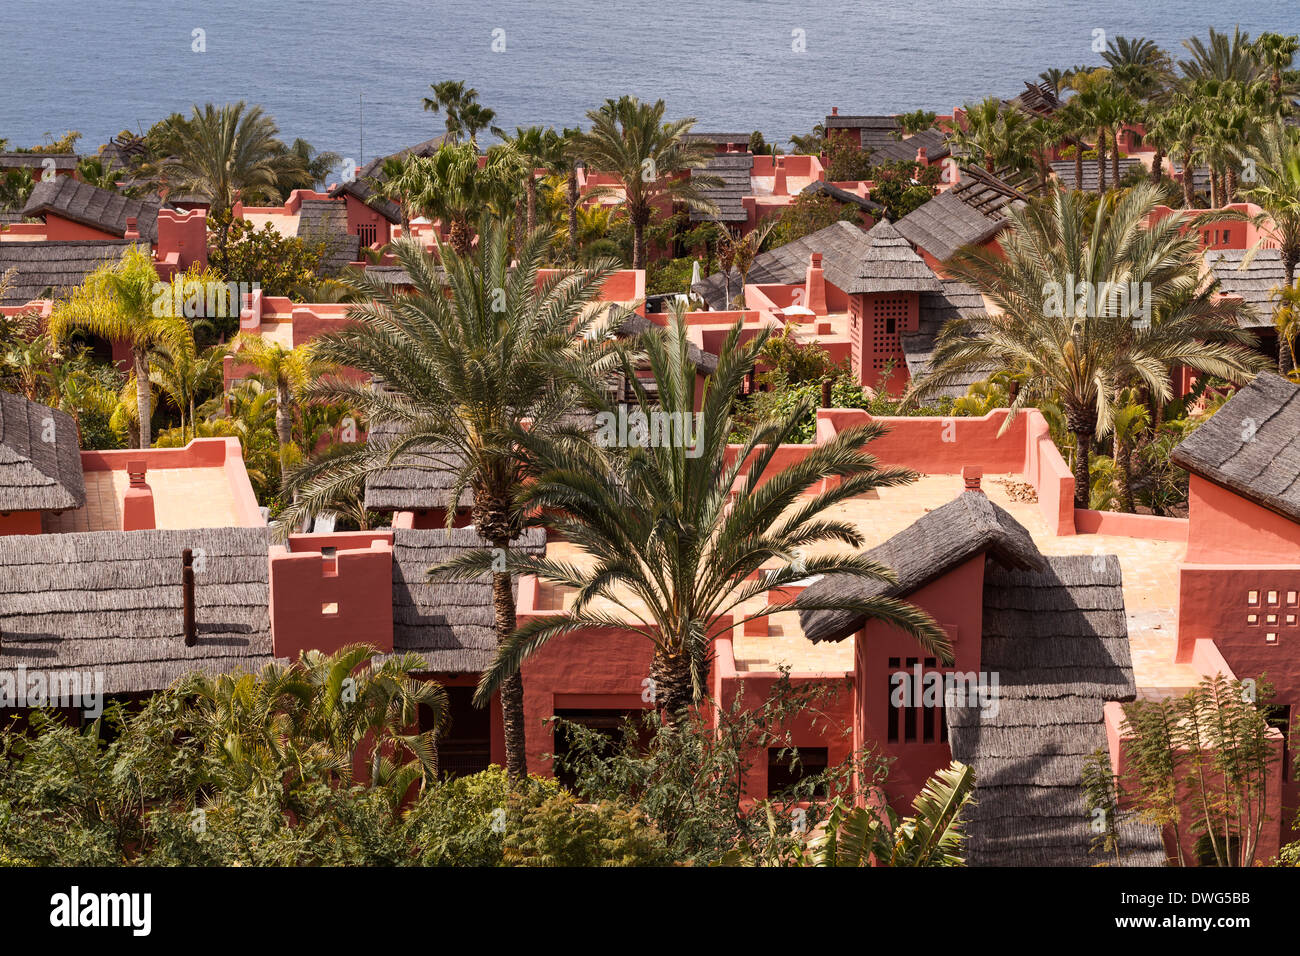 Hotel Abama resort de 5 estrellas cerca de la Playa de San Juan en Tenerife, Islas Canarias, España. Foto de stock